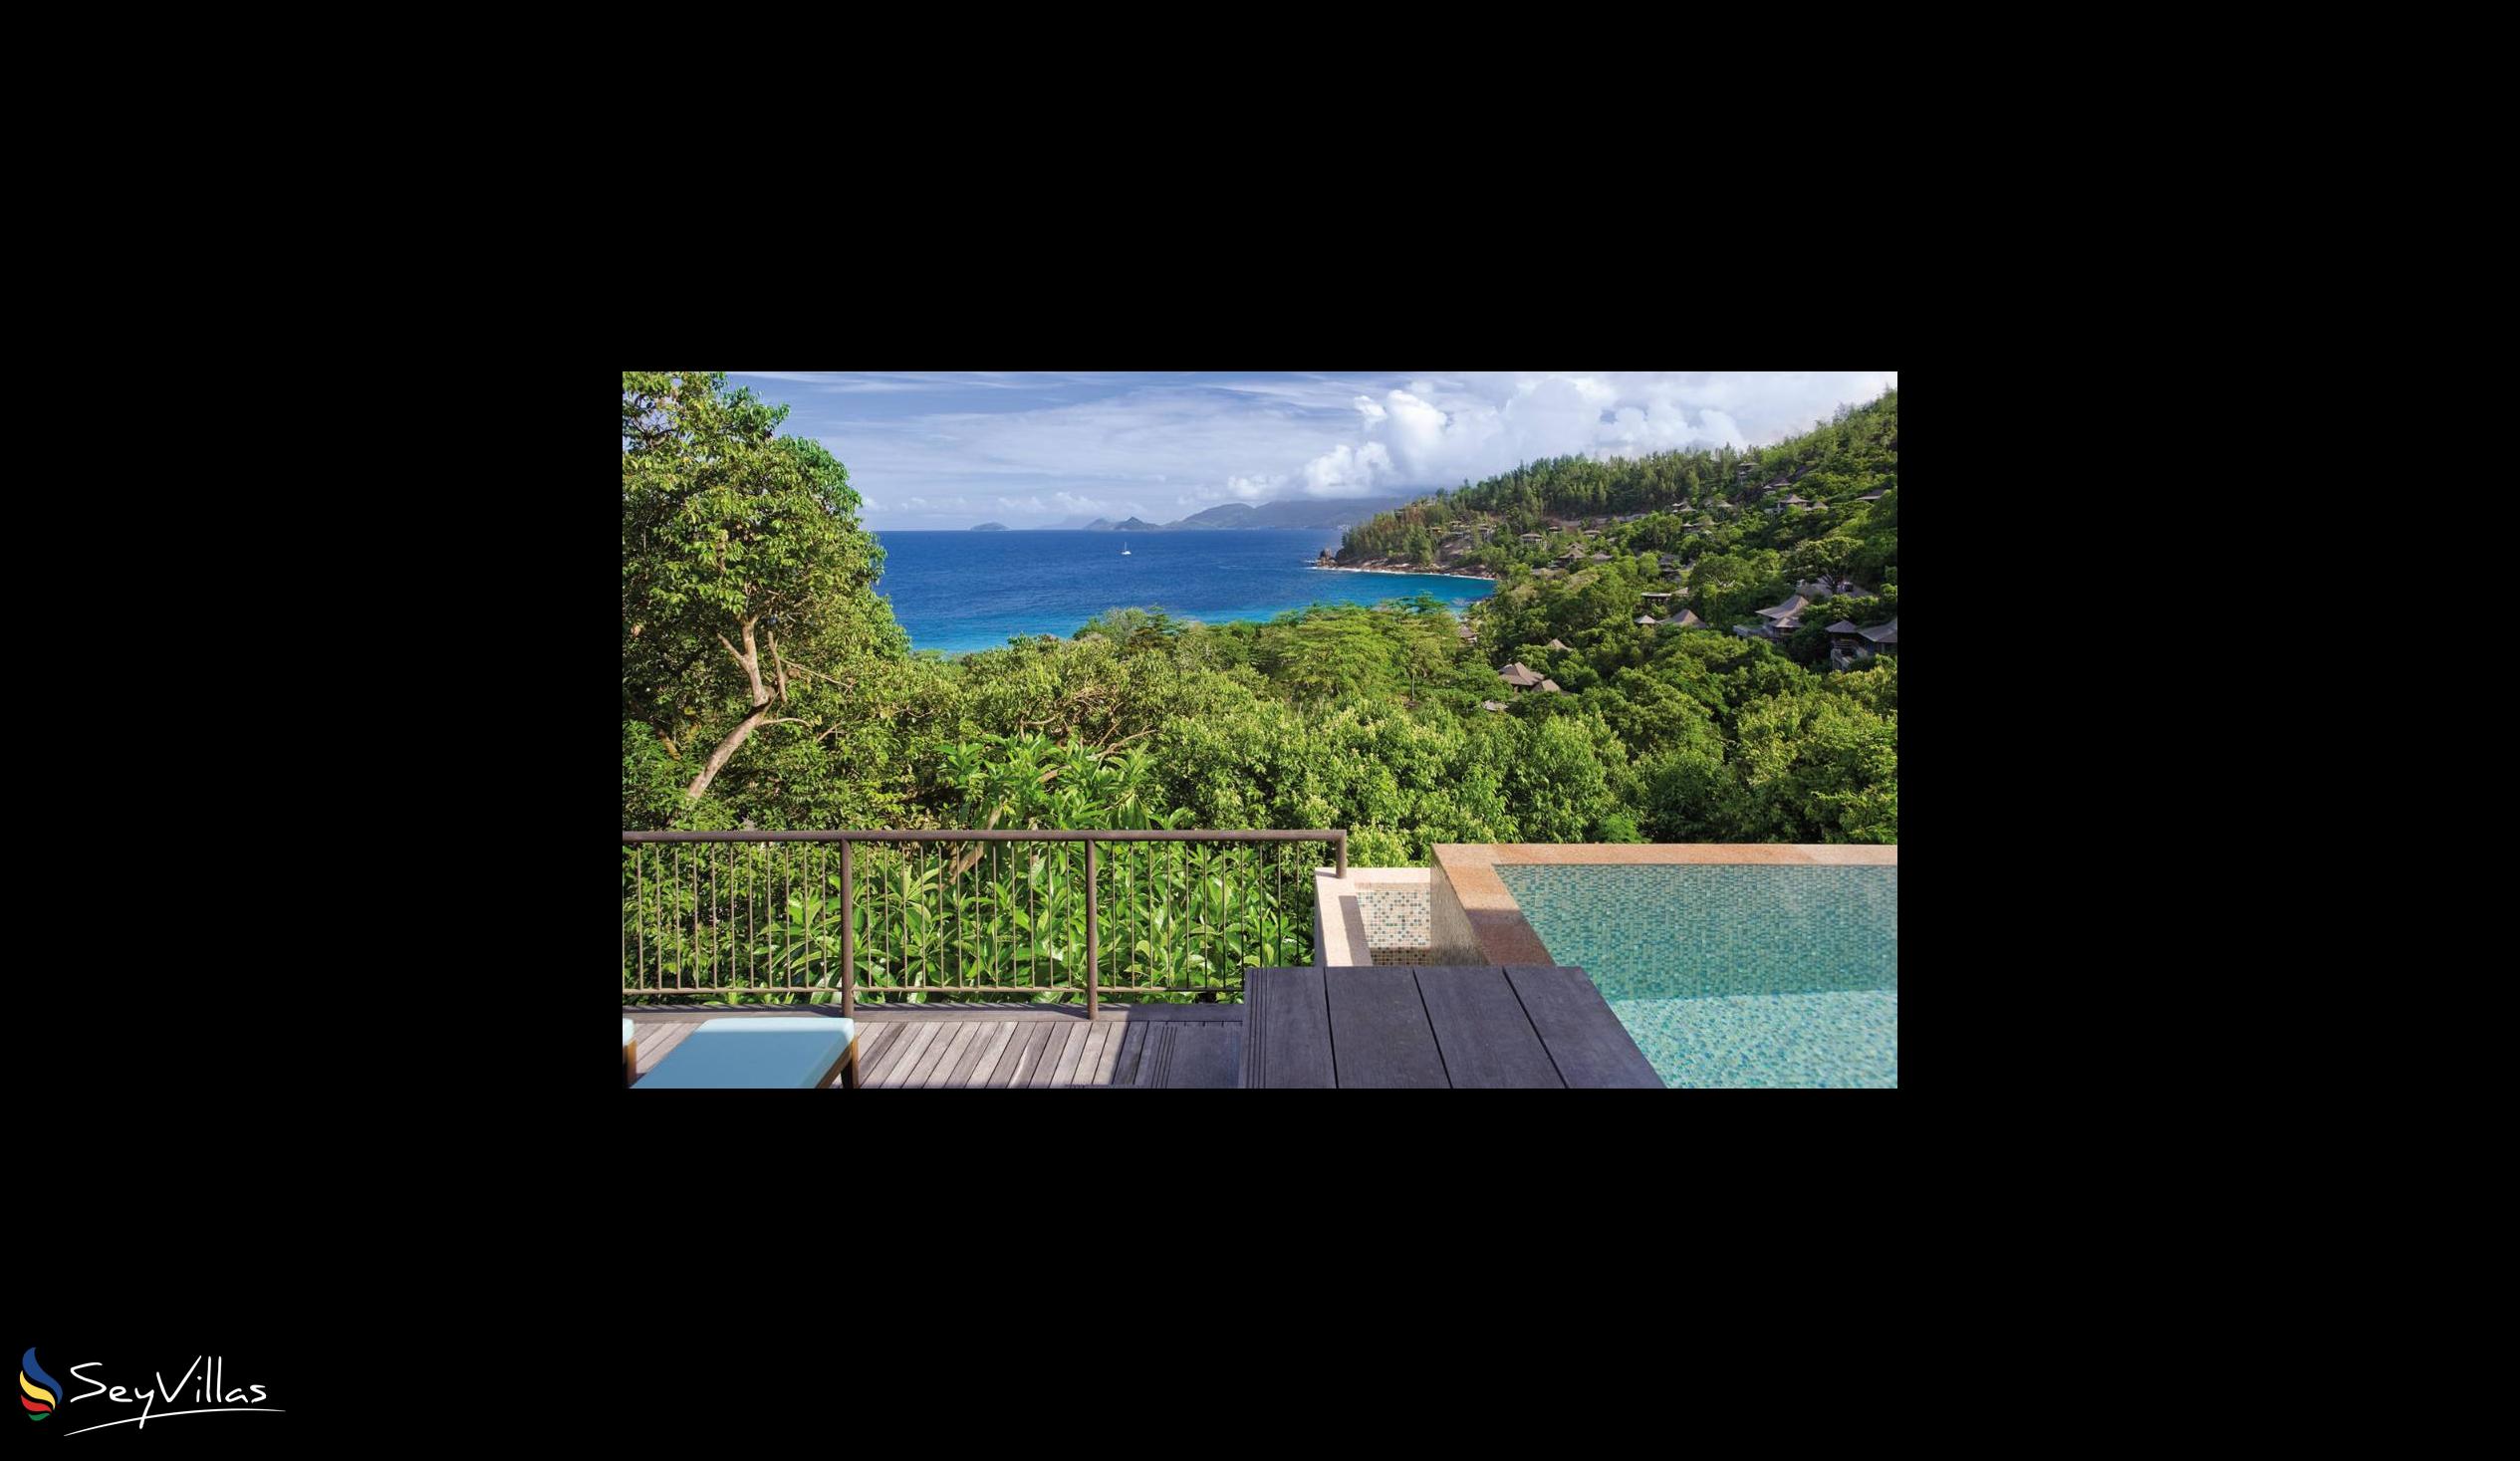 Foto 42: Four Seasons Resort - Hilltop Ocean View Villa - Mahé (Seychelles)